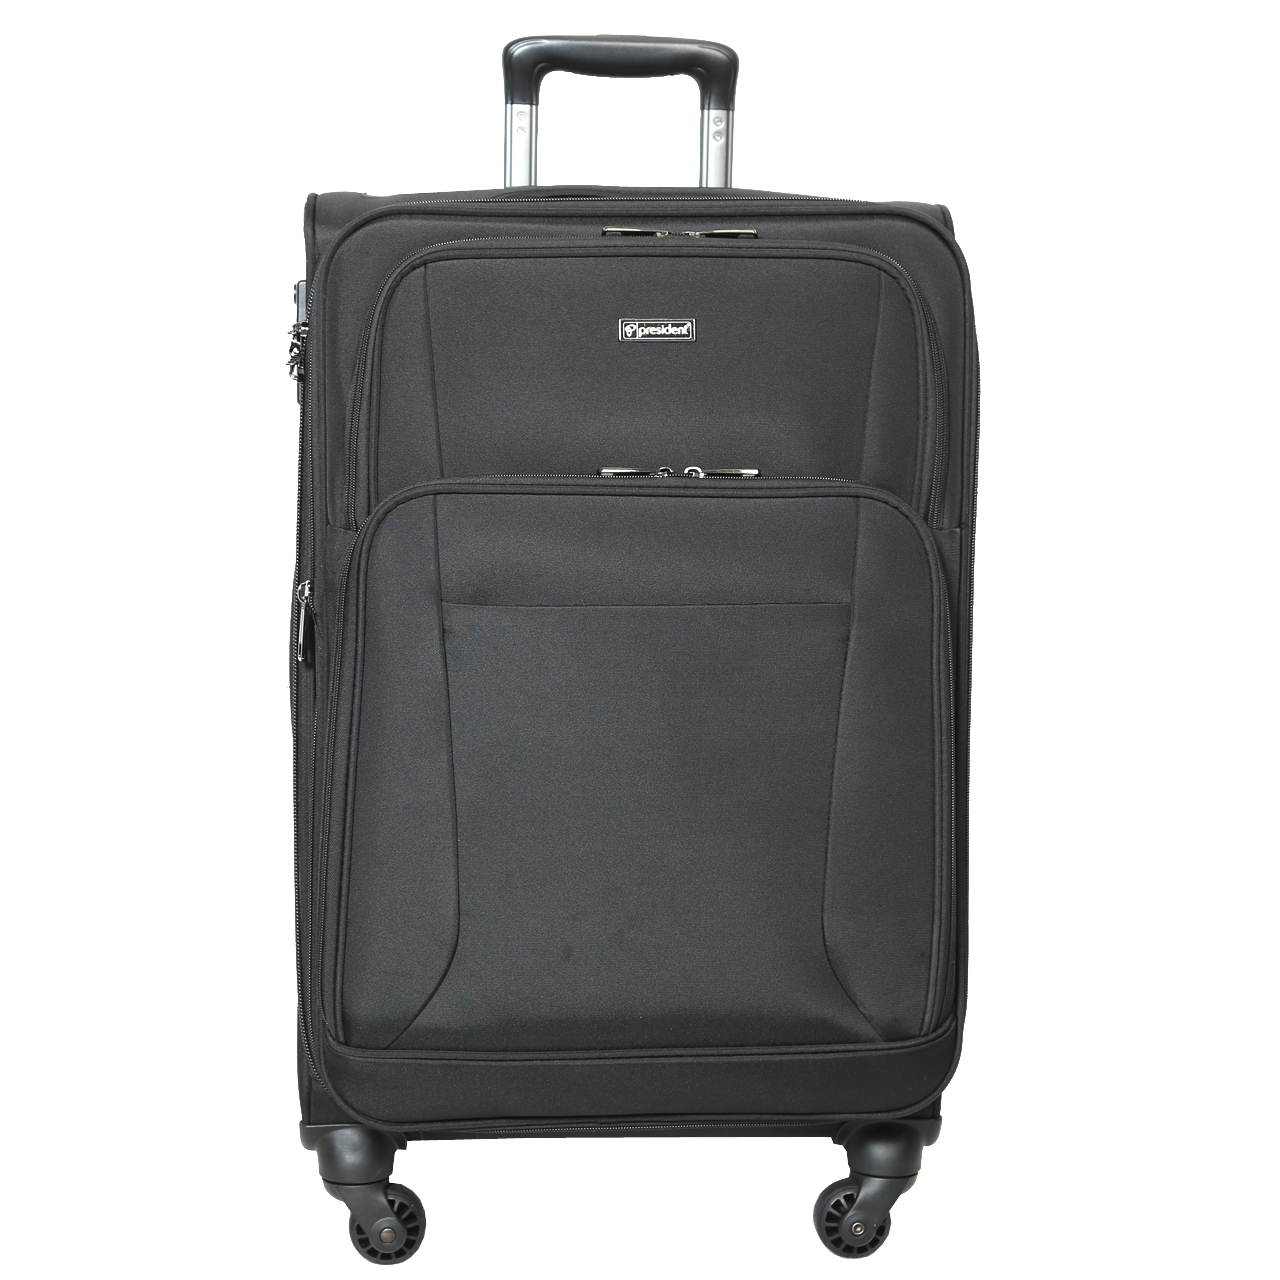  چمدان پرزیدنت مدل SBP1500 سایز متوسط